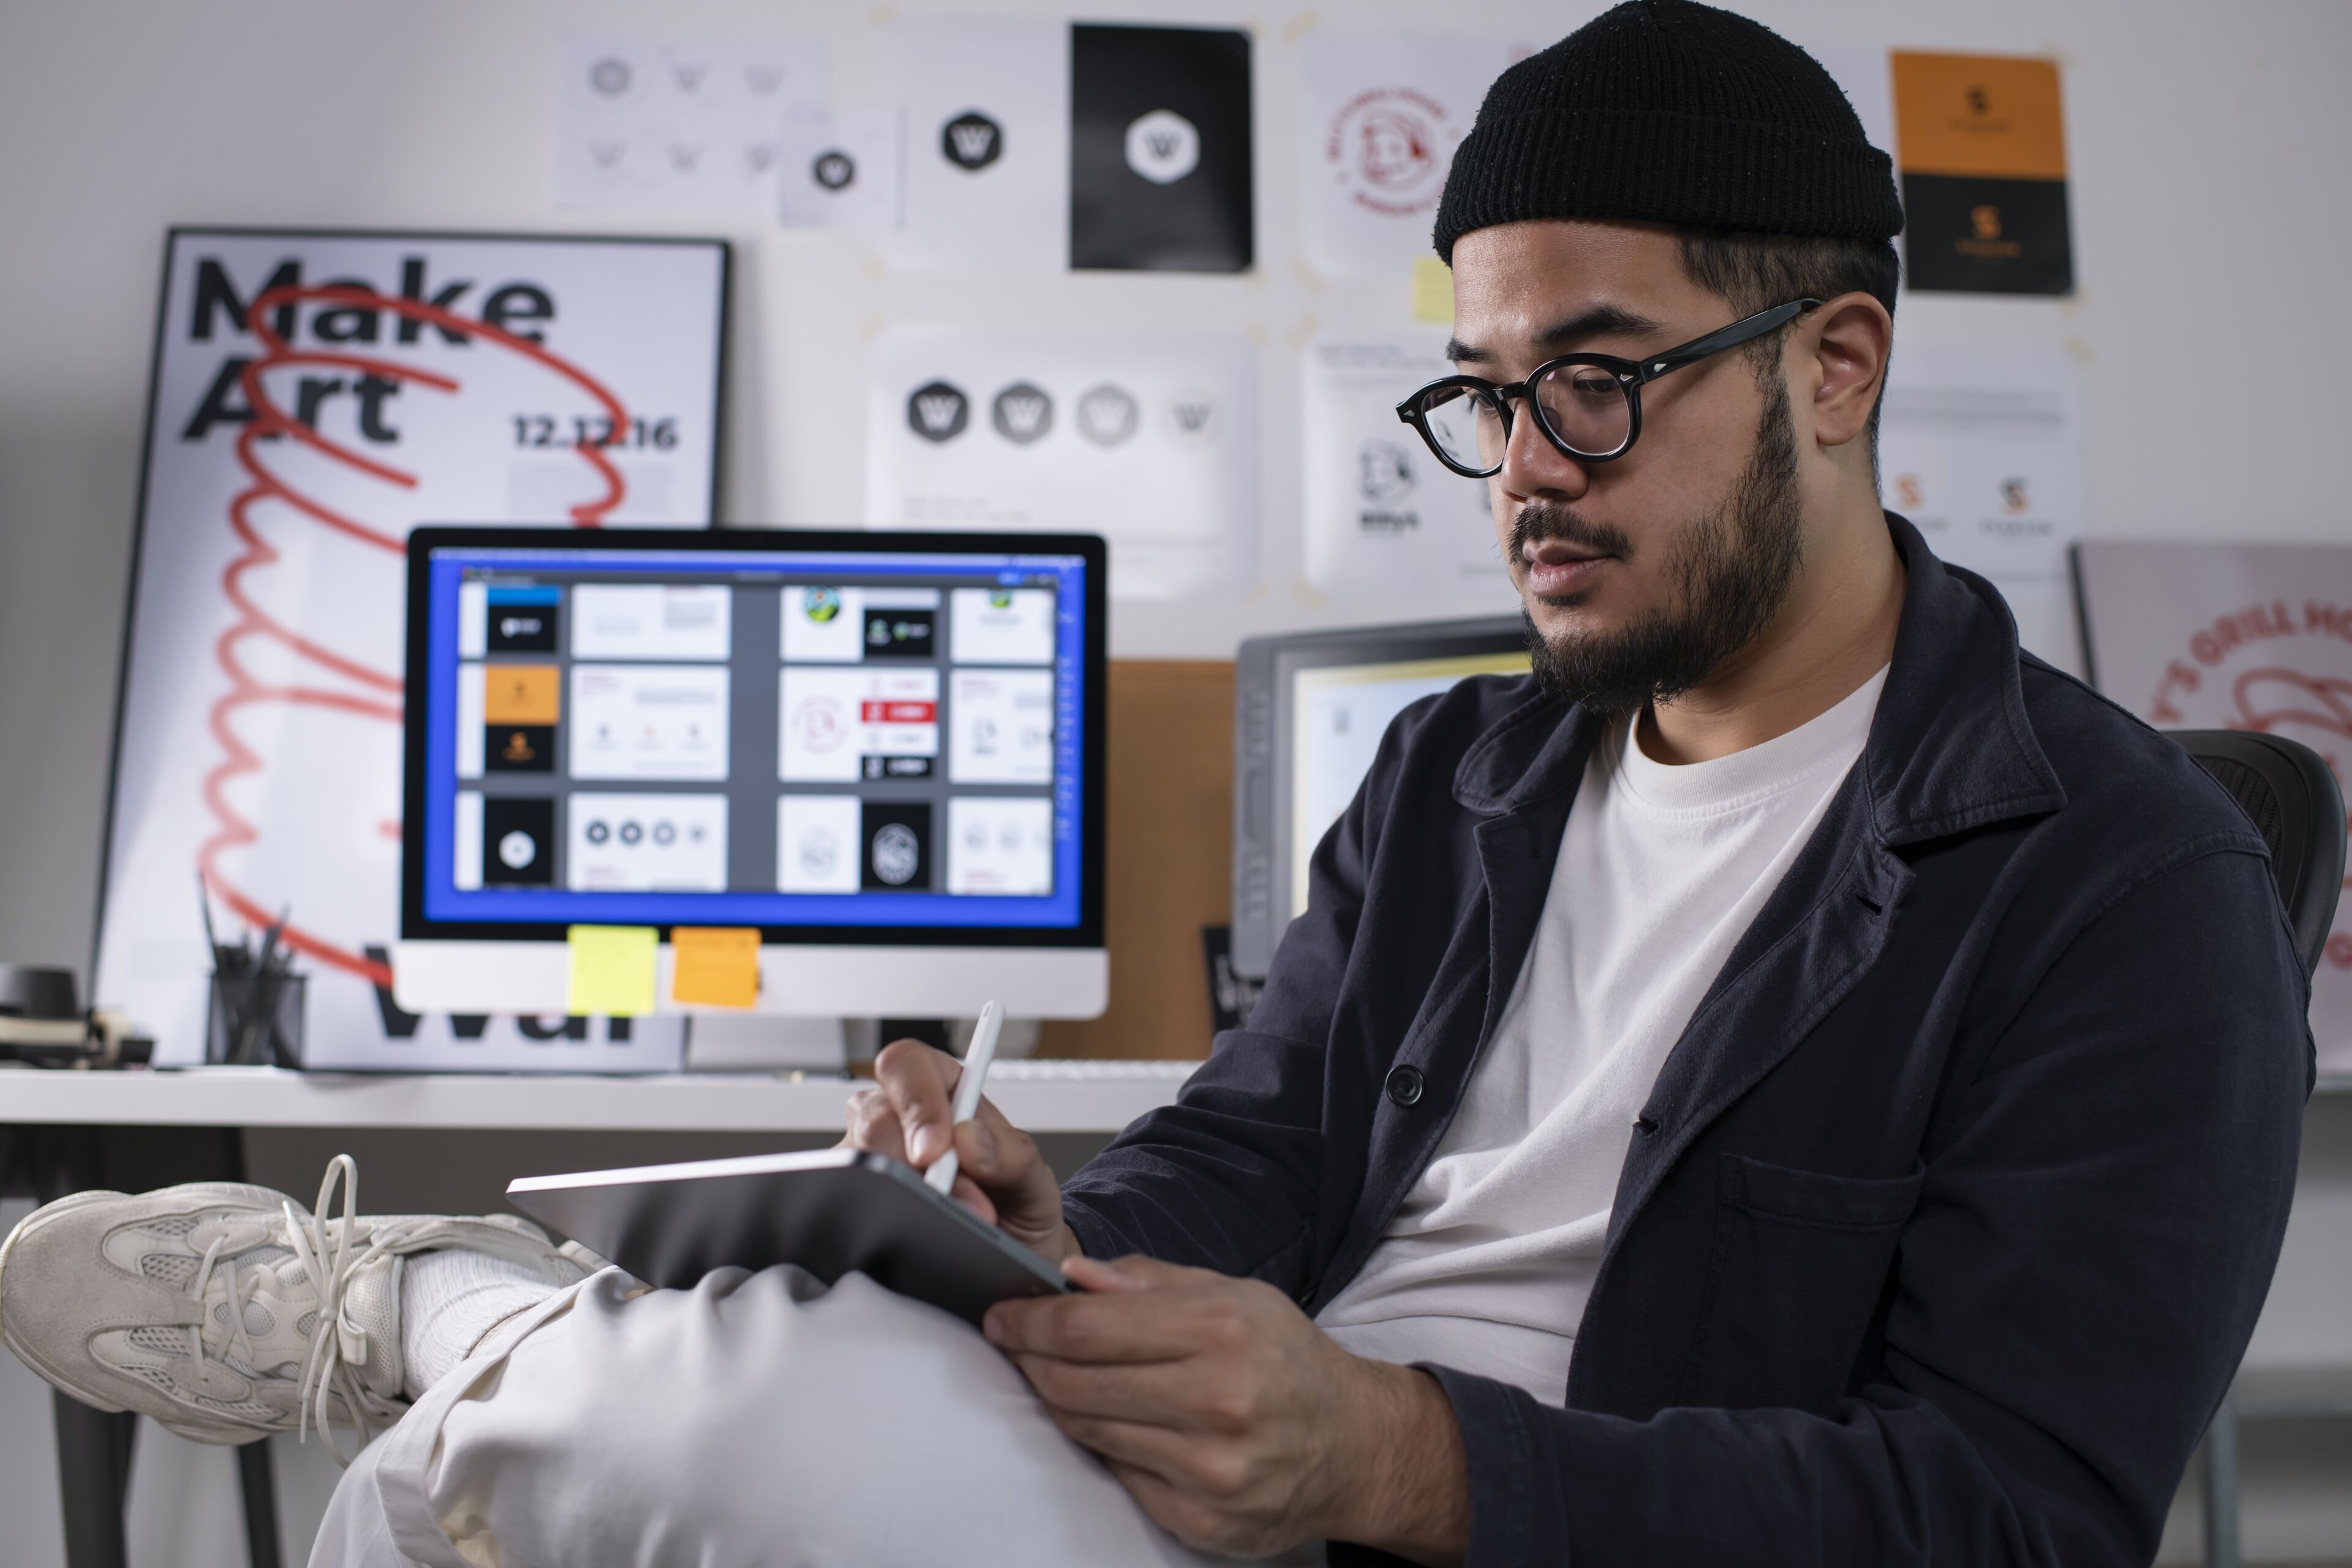 ImageArtista digital masculino enfocado dibujando en una tableta en un estudio de diseño rodeado de inspiración creativa.